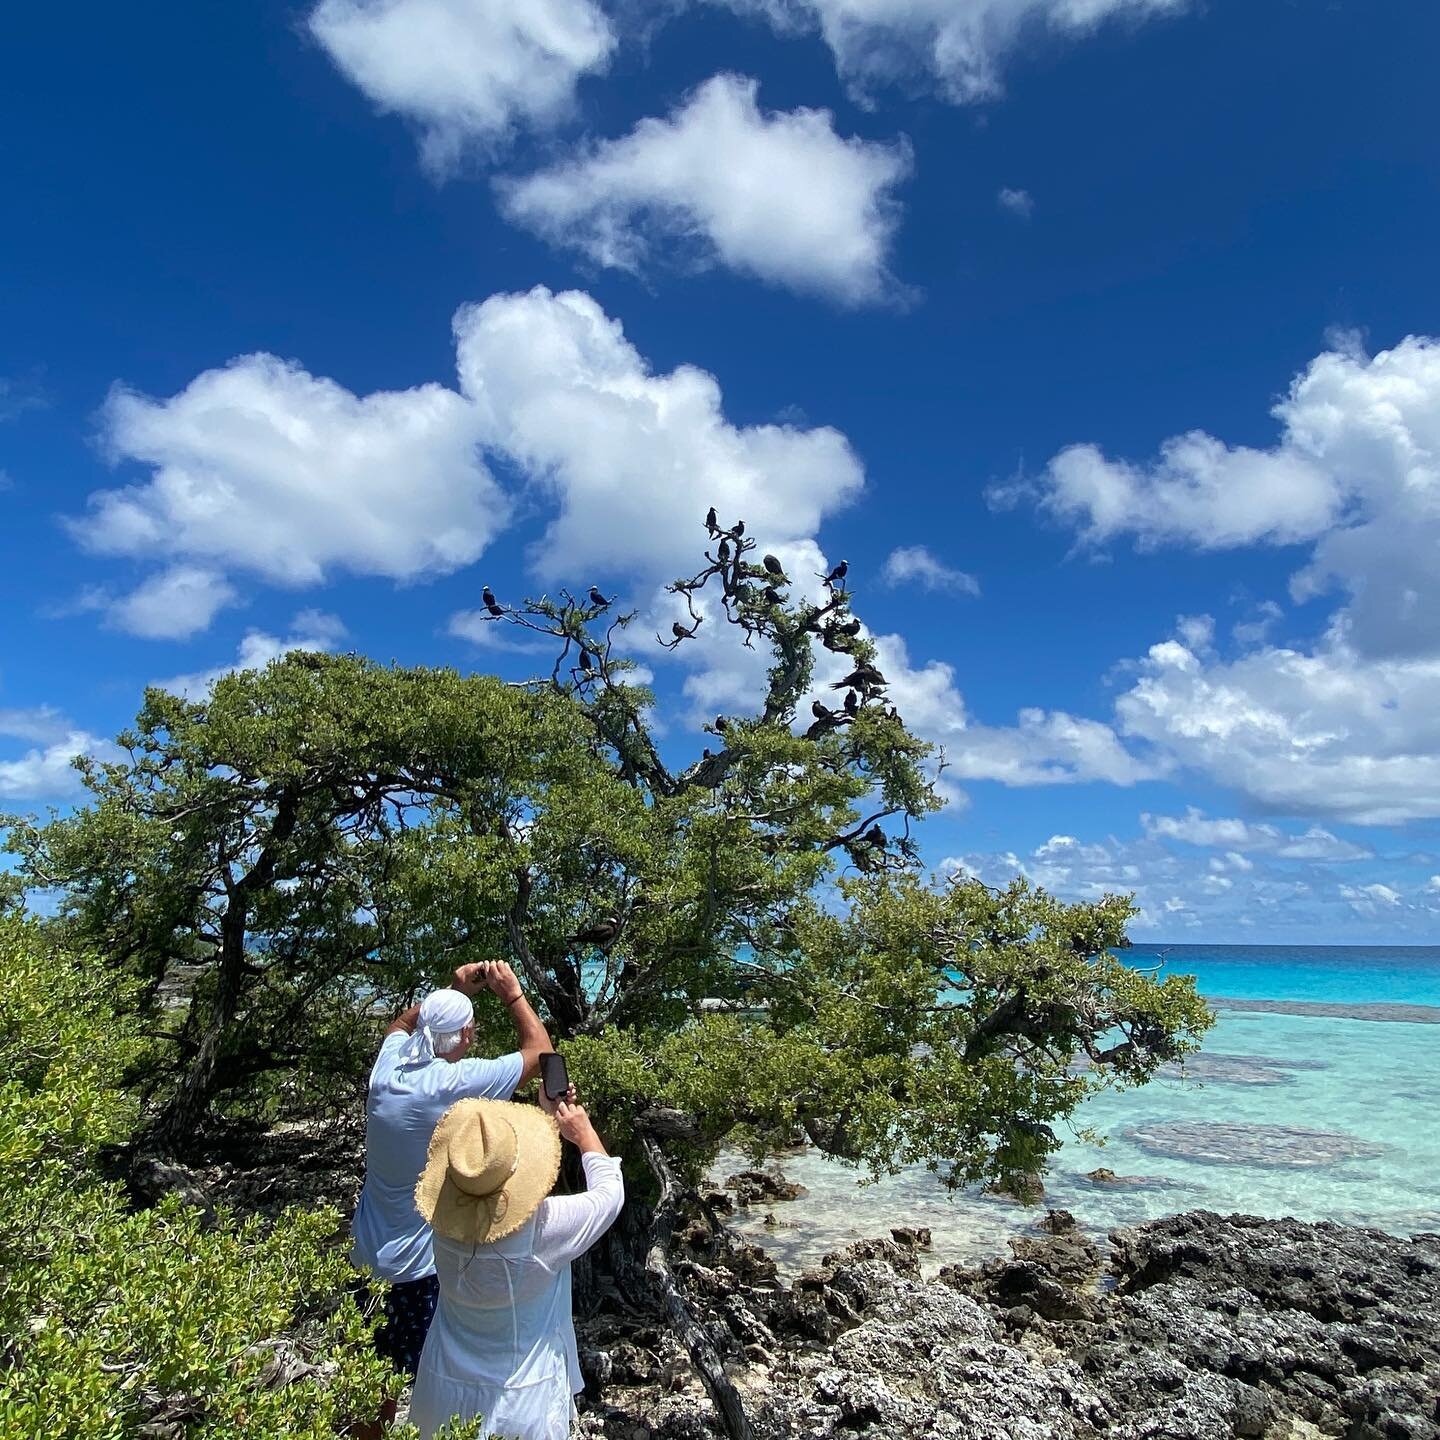 Bird island expedition ✨
.
#tikehau #tikewow #tahiti #moorea #paradise